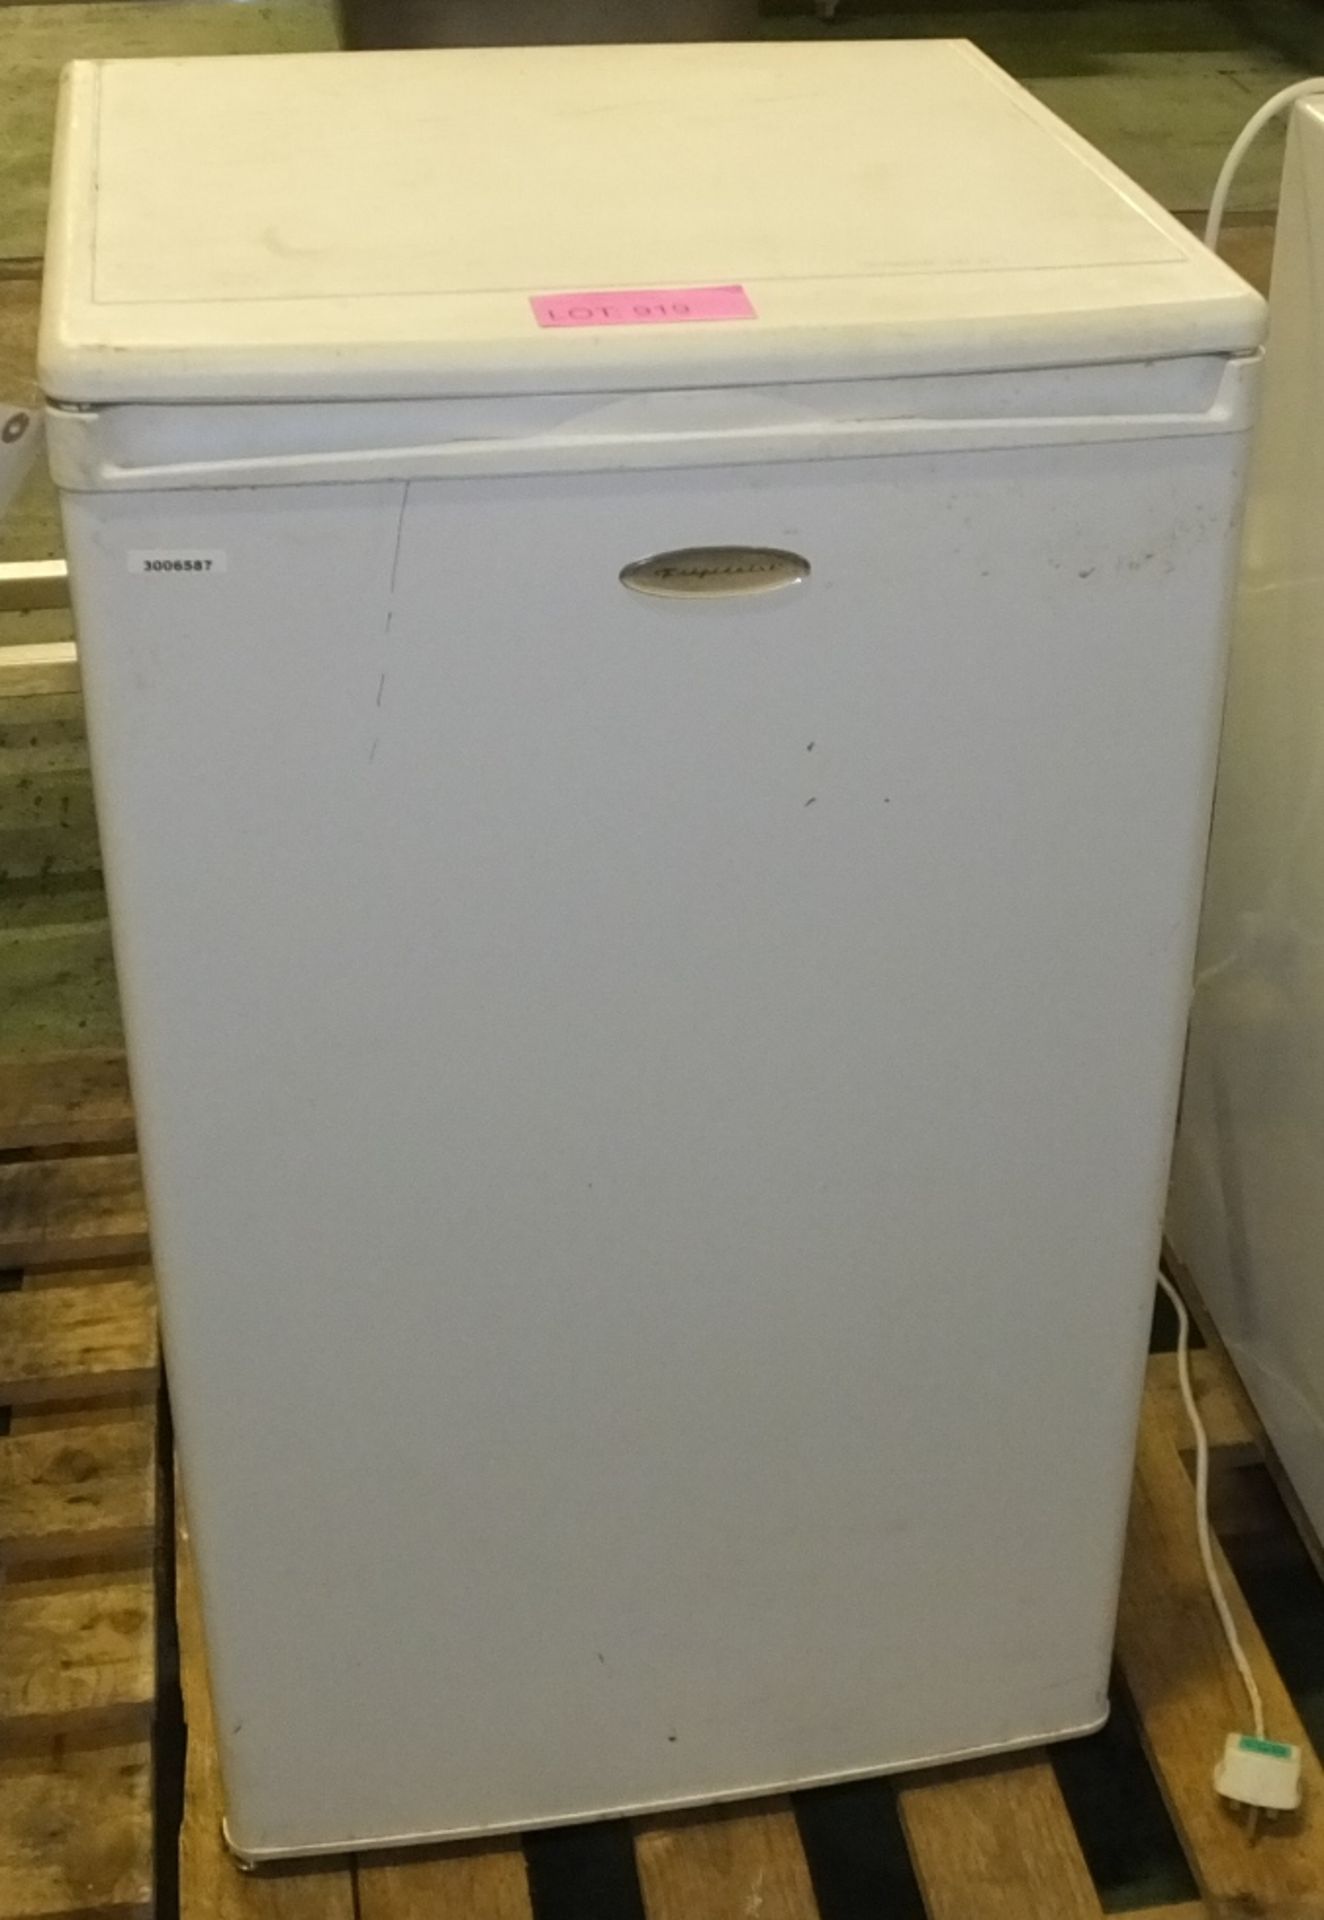 WYA8312/14 - Frigidaire Refrigerator RLH1303 510 x 500 x 860mm.